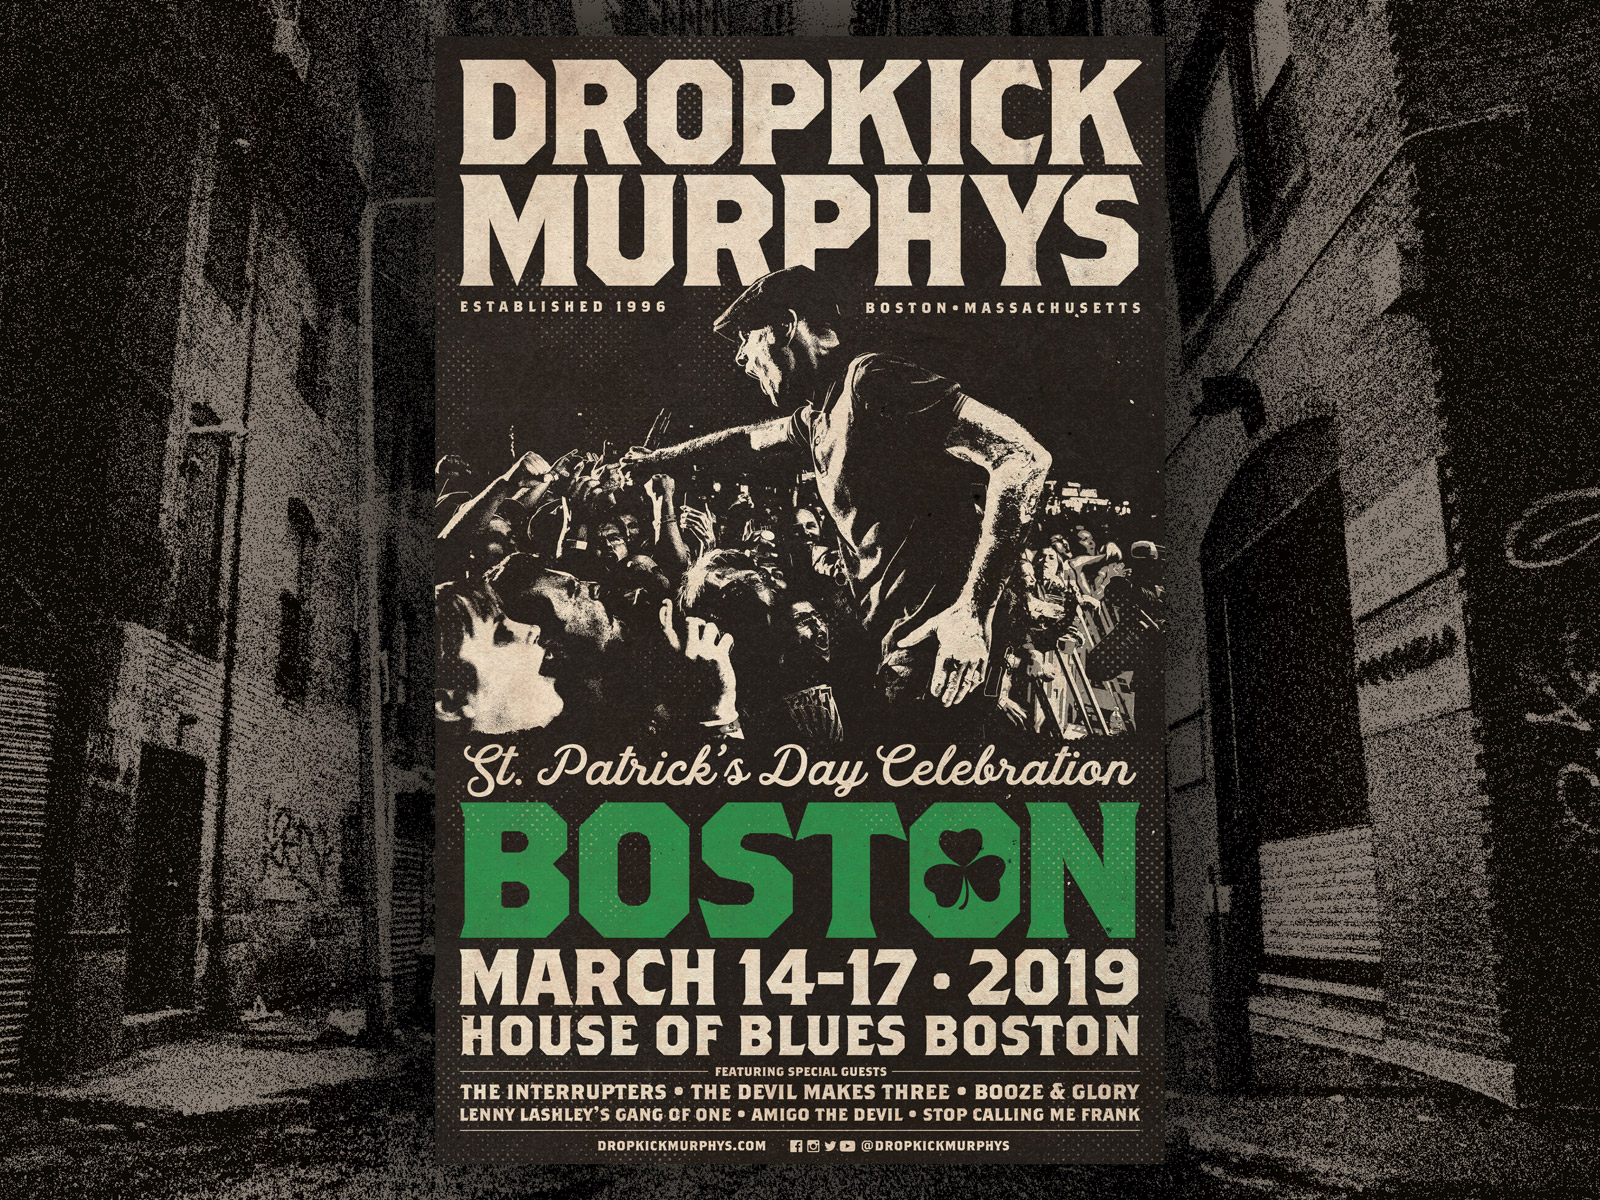 Dropkick Murphys - St Patrick's Day Celebration by Jason Lowery on